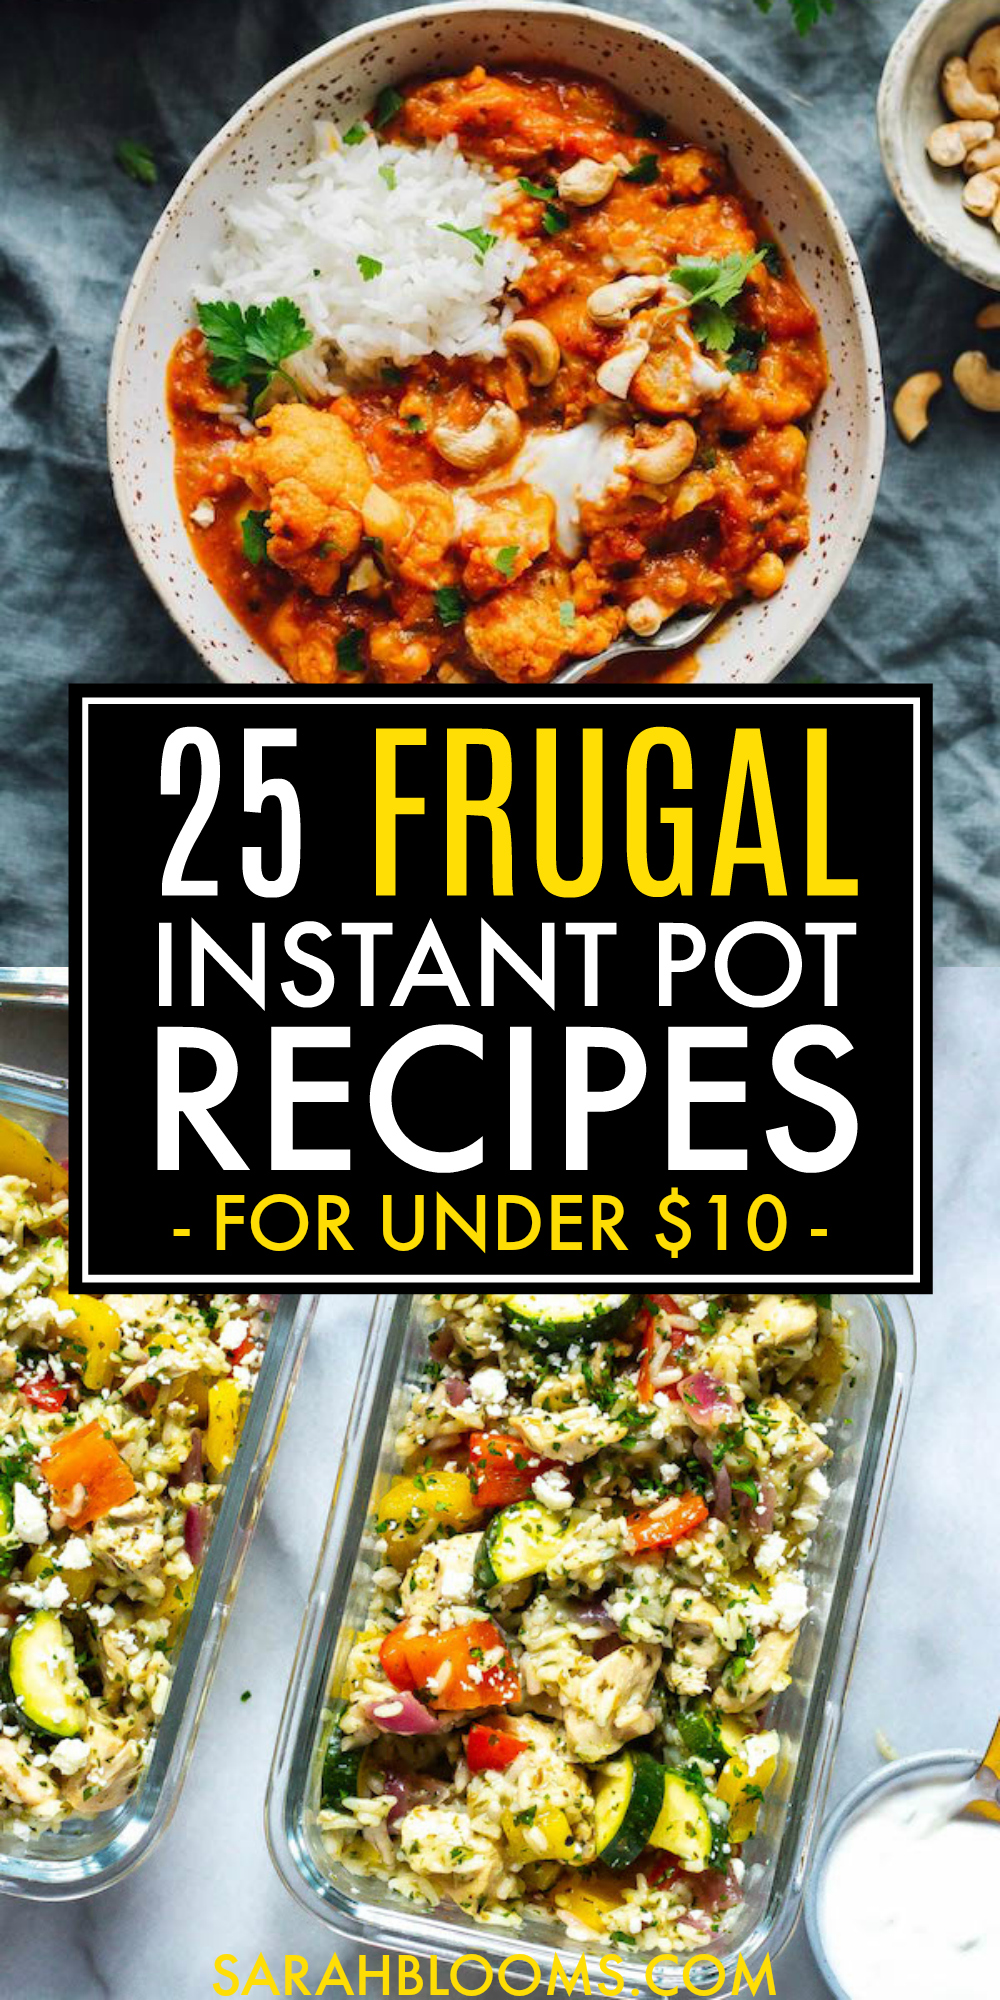 25 Quick and Easy Instant Pot Recipes you can make for under $10 each! #frugalmeals #quickmeals #instantpot #instantpotrecipes #instantpotmeals #weeknightmeals #budgetrecipes #budgetmeals